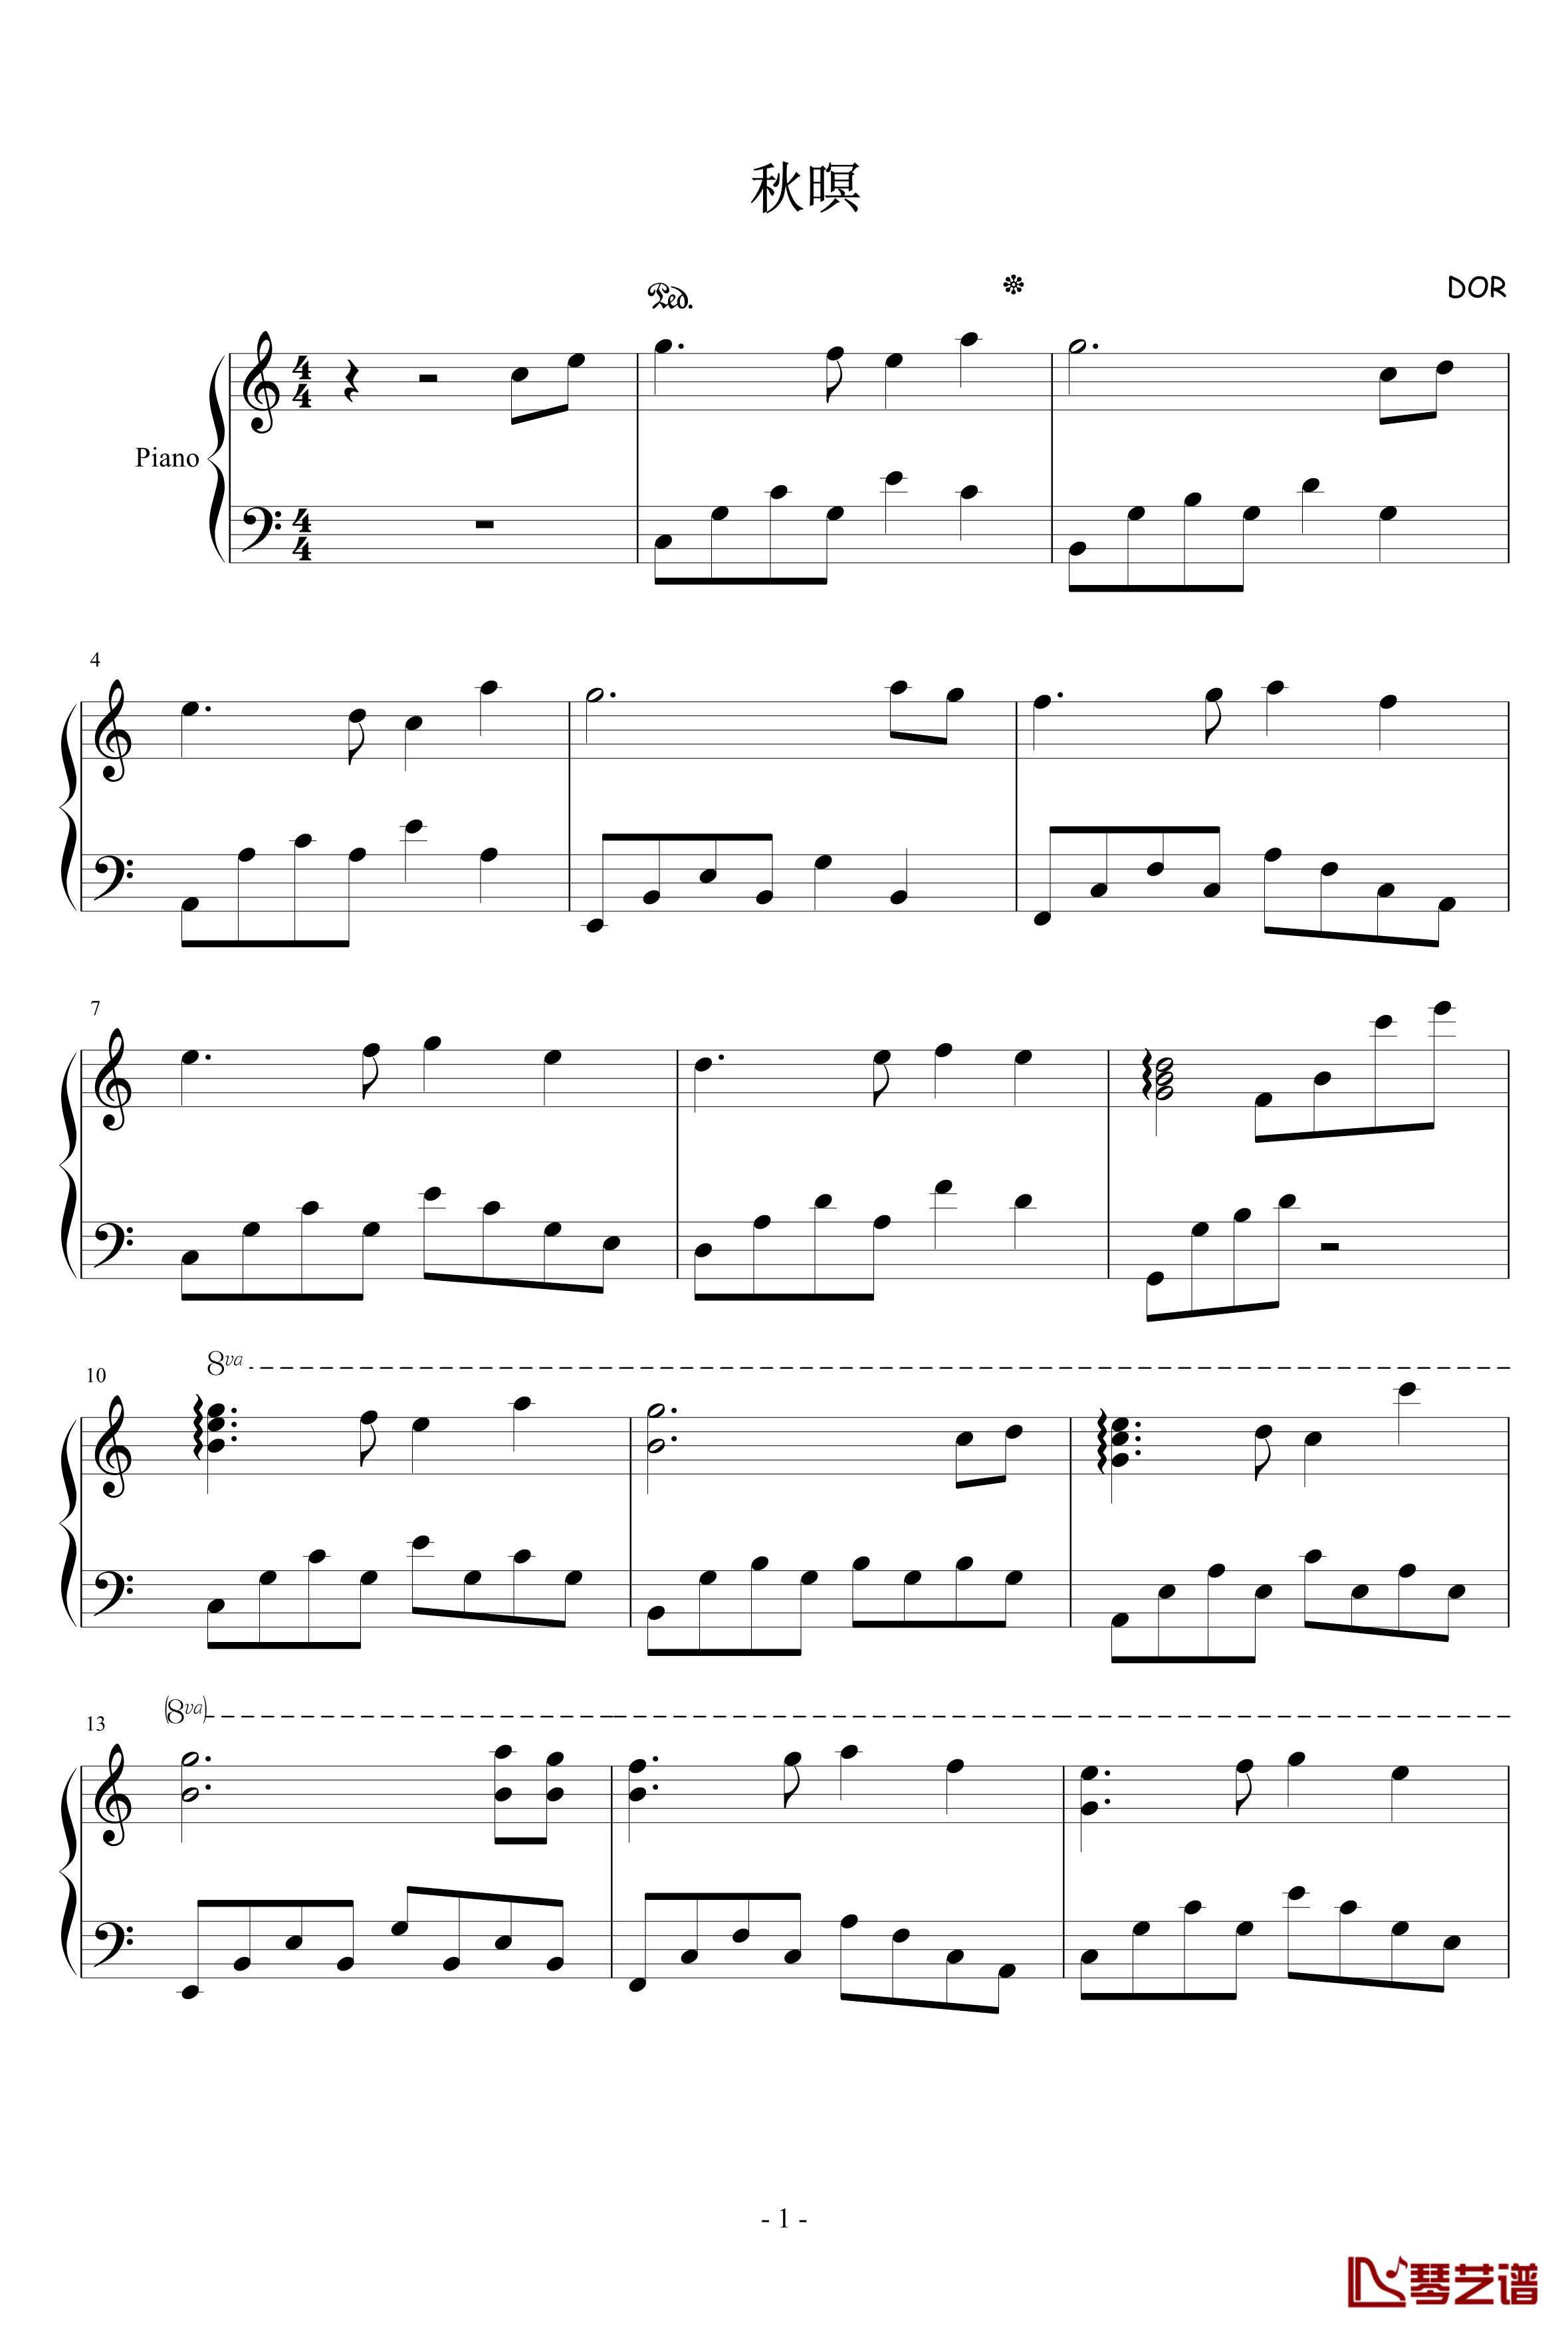 秋瞑钢琴谱-Dor1